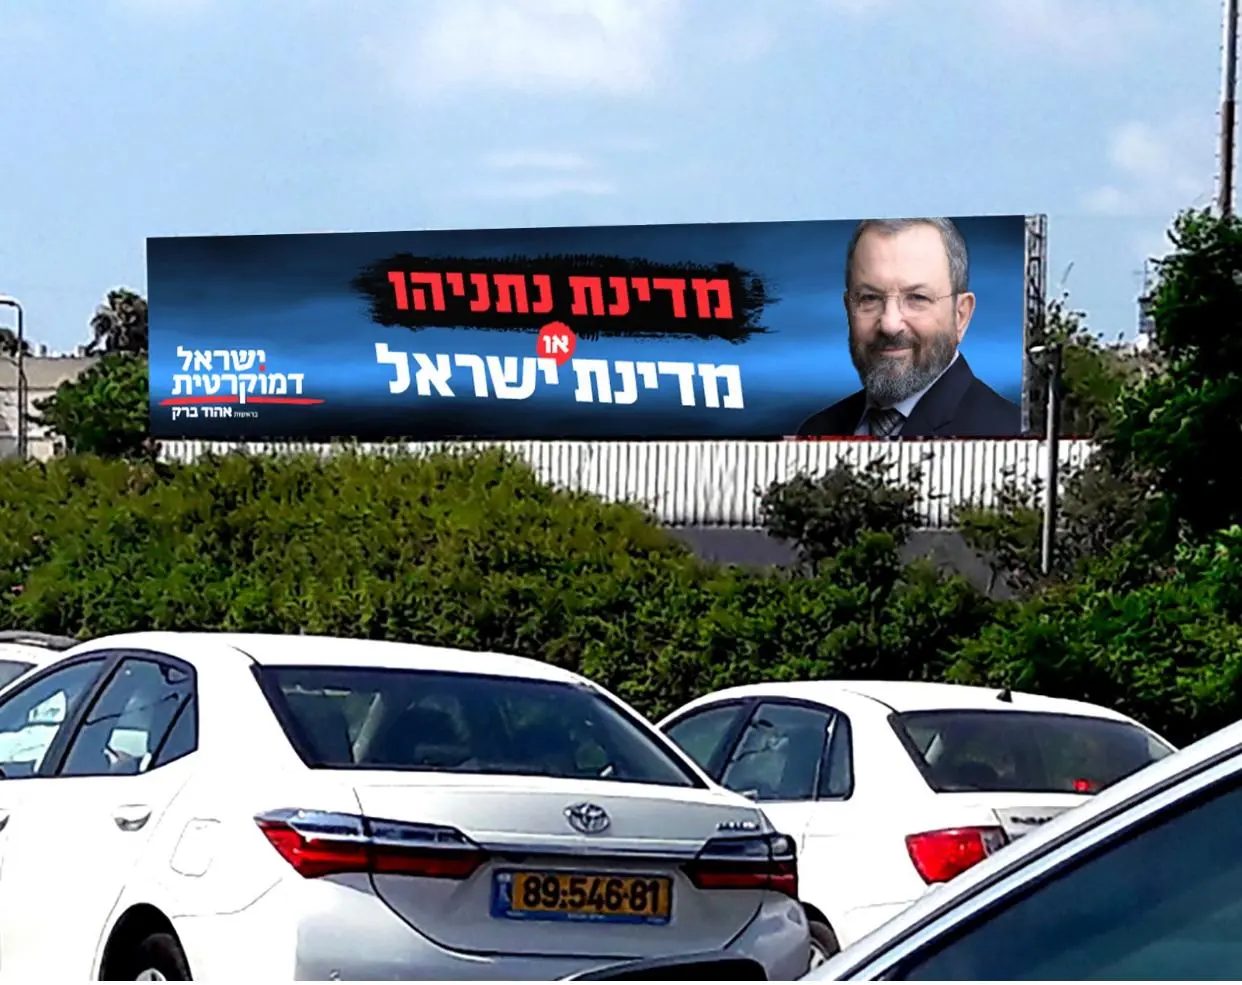 ראש הממשלה לשעבר אהוד ברק חשף את שם מפלגתו החדשה – "ישראל דמוקרטית", 6 יולי 2019